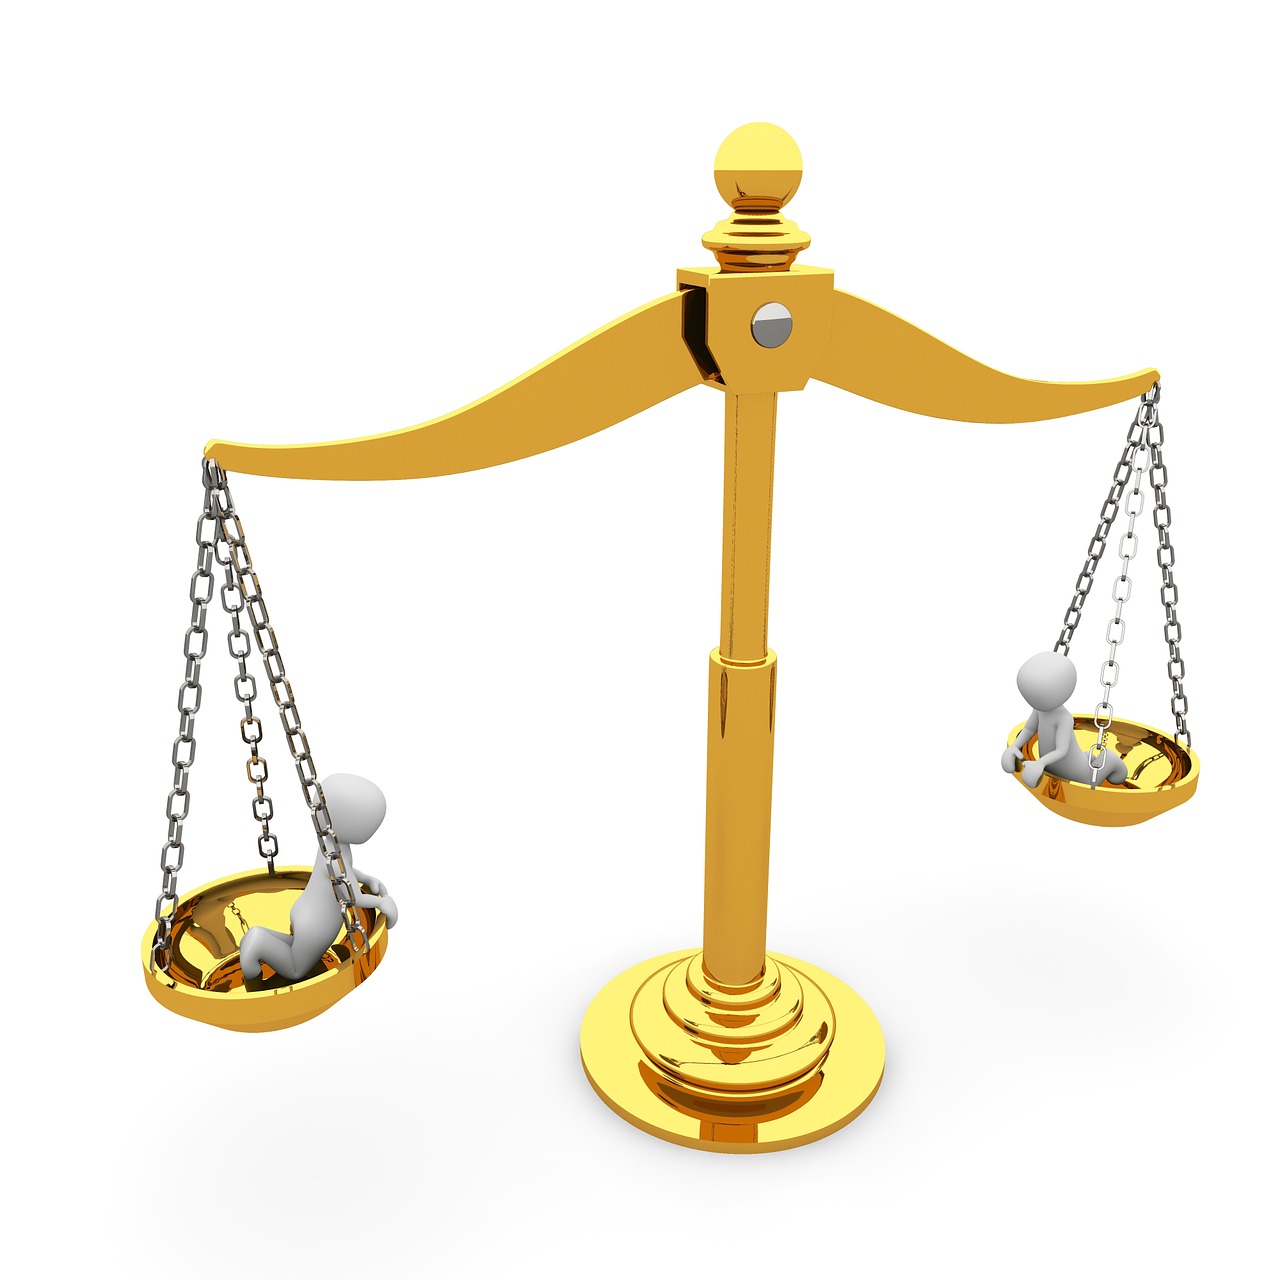 Porady prawne – Warto z nich korzystać